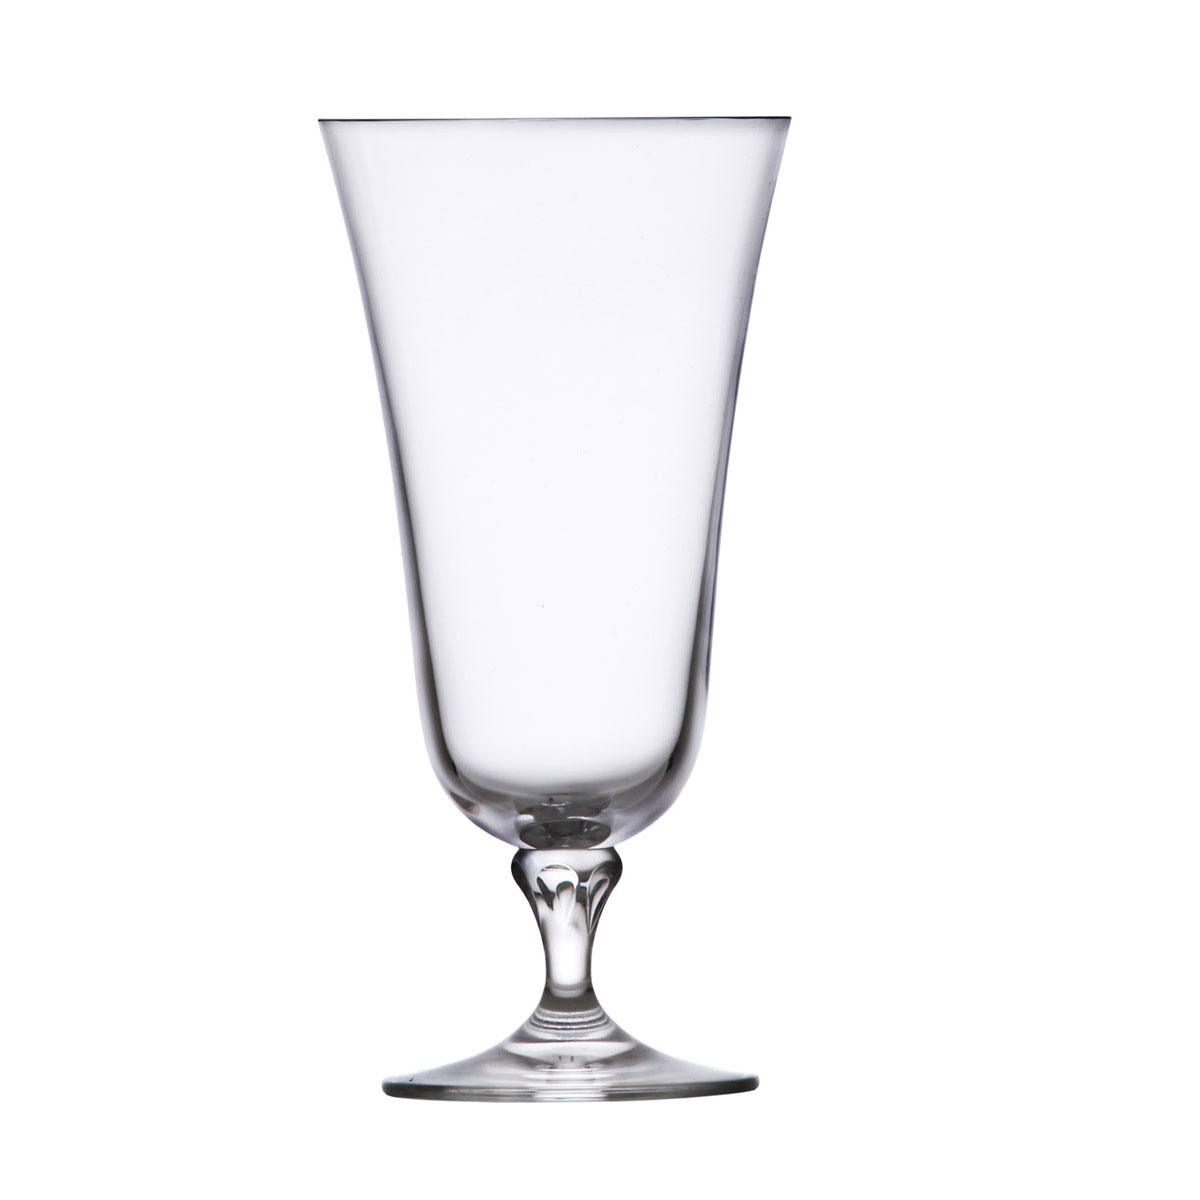 Schott Zwiesel Tritan Crystal, Charlotte All Purpose Glass, Single